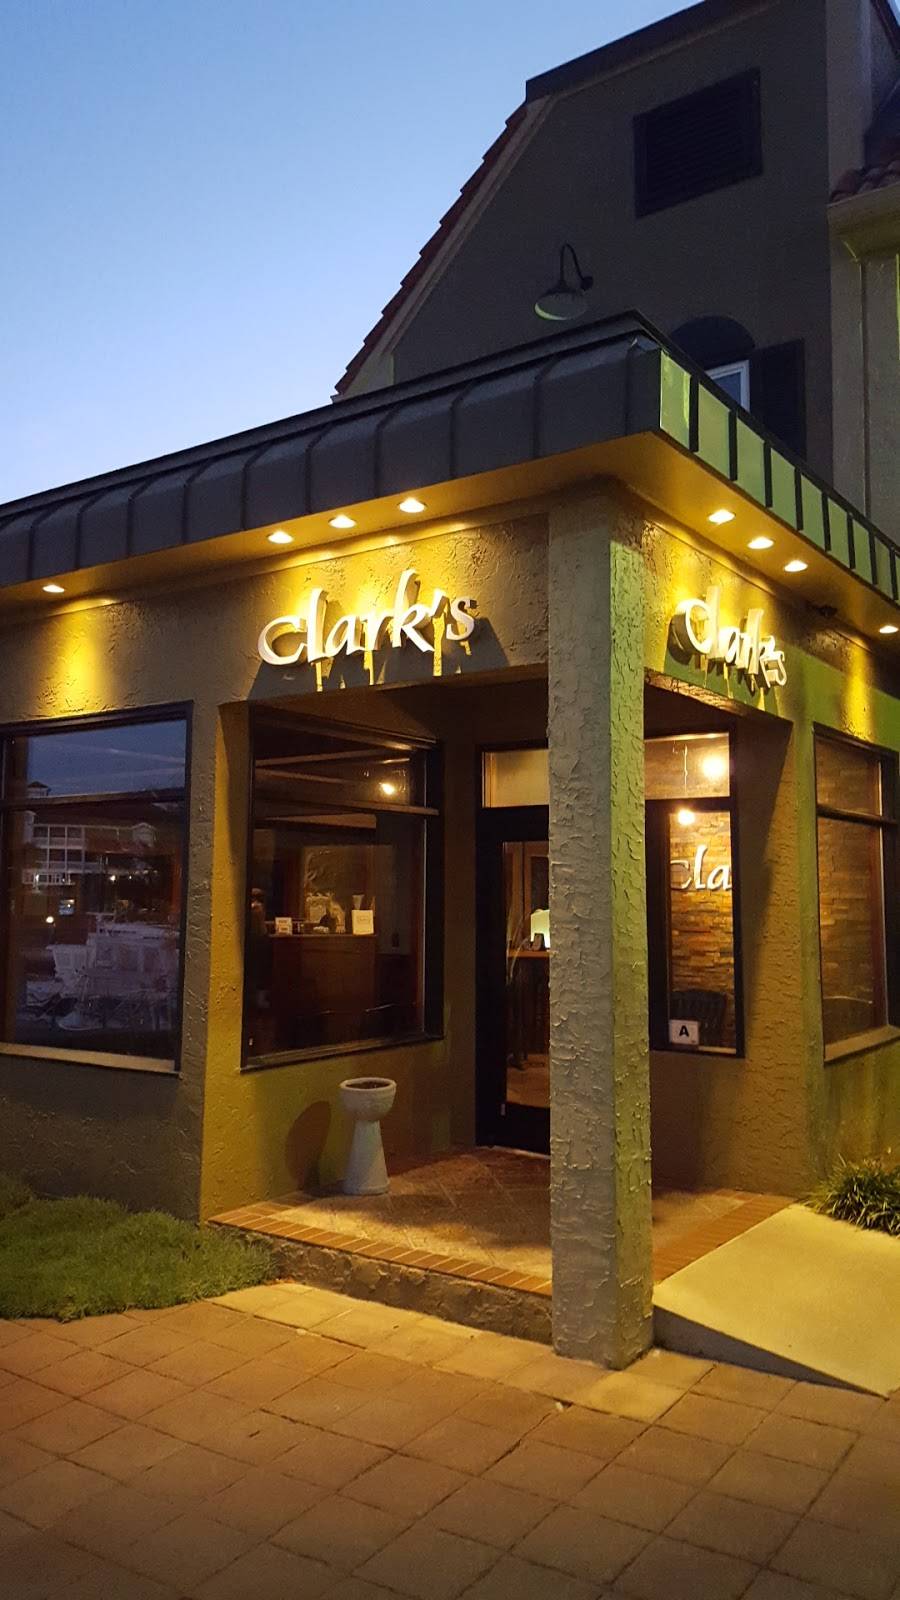 clark's restaurant little river